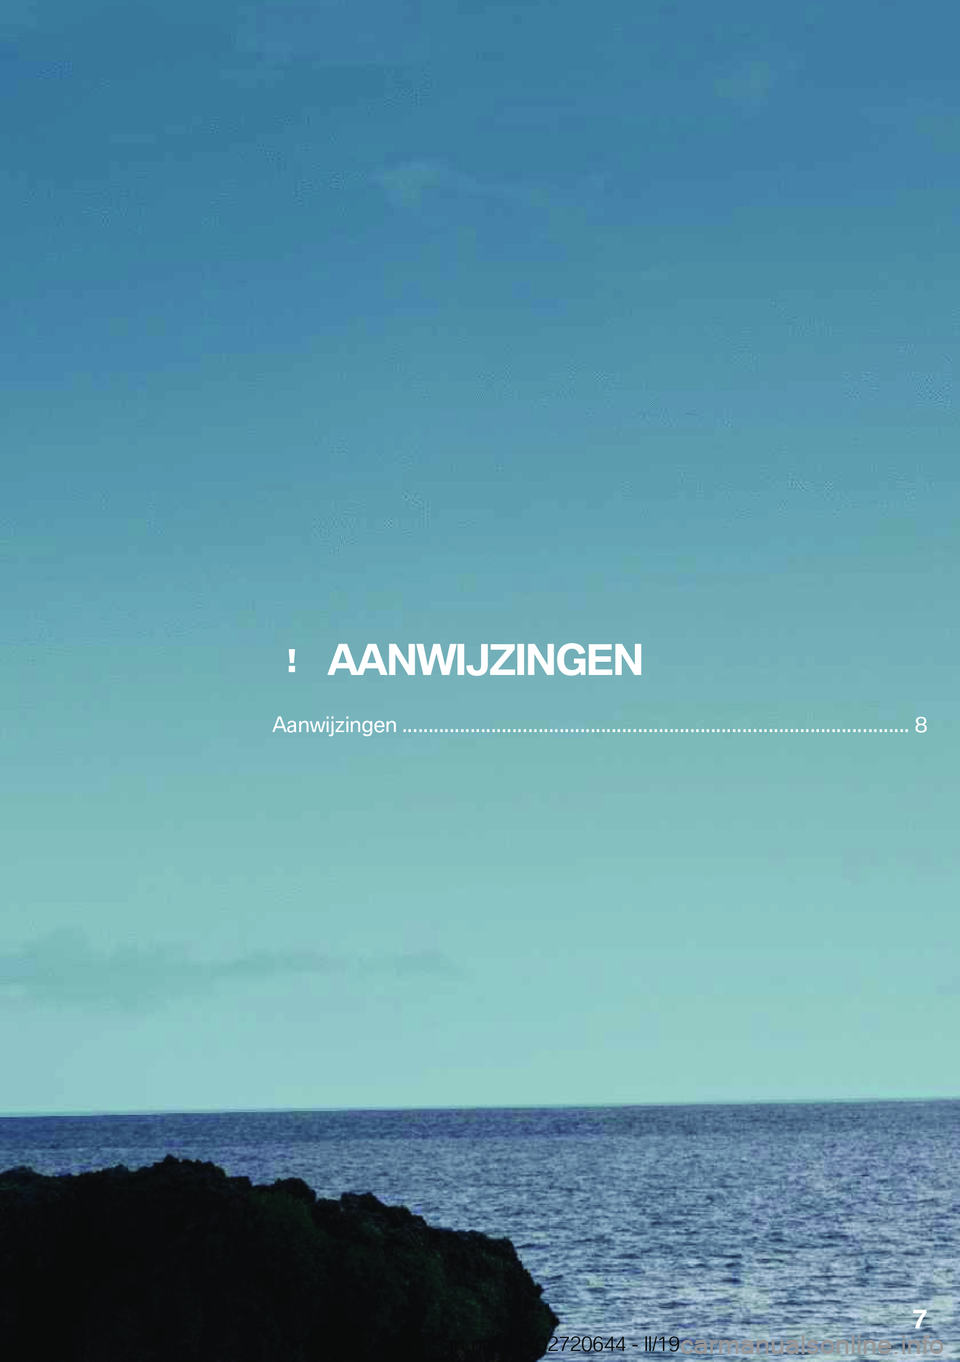 BMW M2 2020  Instructieboekjes (in Dutch) ���A�A�N�W�I�J�;�I�N�G�E�N
�A�a�n�w�i�j�z�i�n�g�e�n��.�.�.�.�.�.�.�.�.�.�.�.�.�.�.�.�.�.�.�.�.�.�.�.�.�.�.�.�.�.�.�.�.�.�.�.�.�.�.�.�.�.�.�.�.�.�.�.�.�.�.�.�.�.�.�.�.�.�.�.�.�.�.�.�.�.�.�.�.�.�.�.�